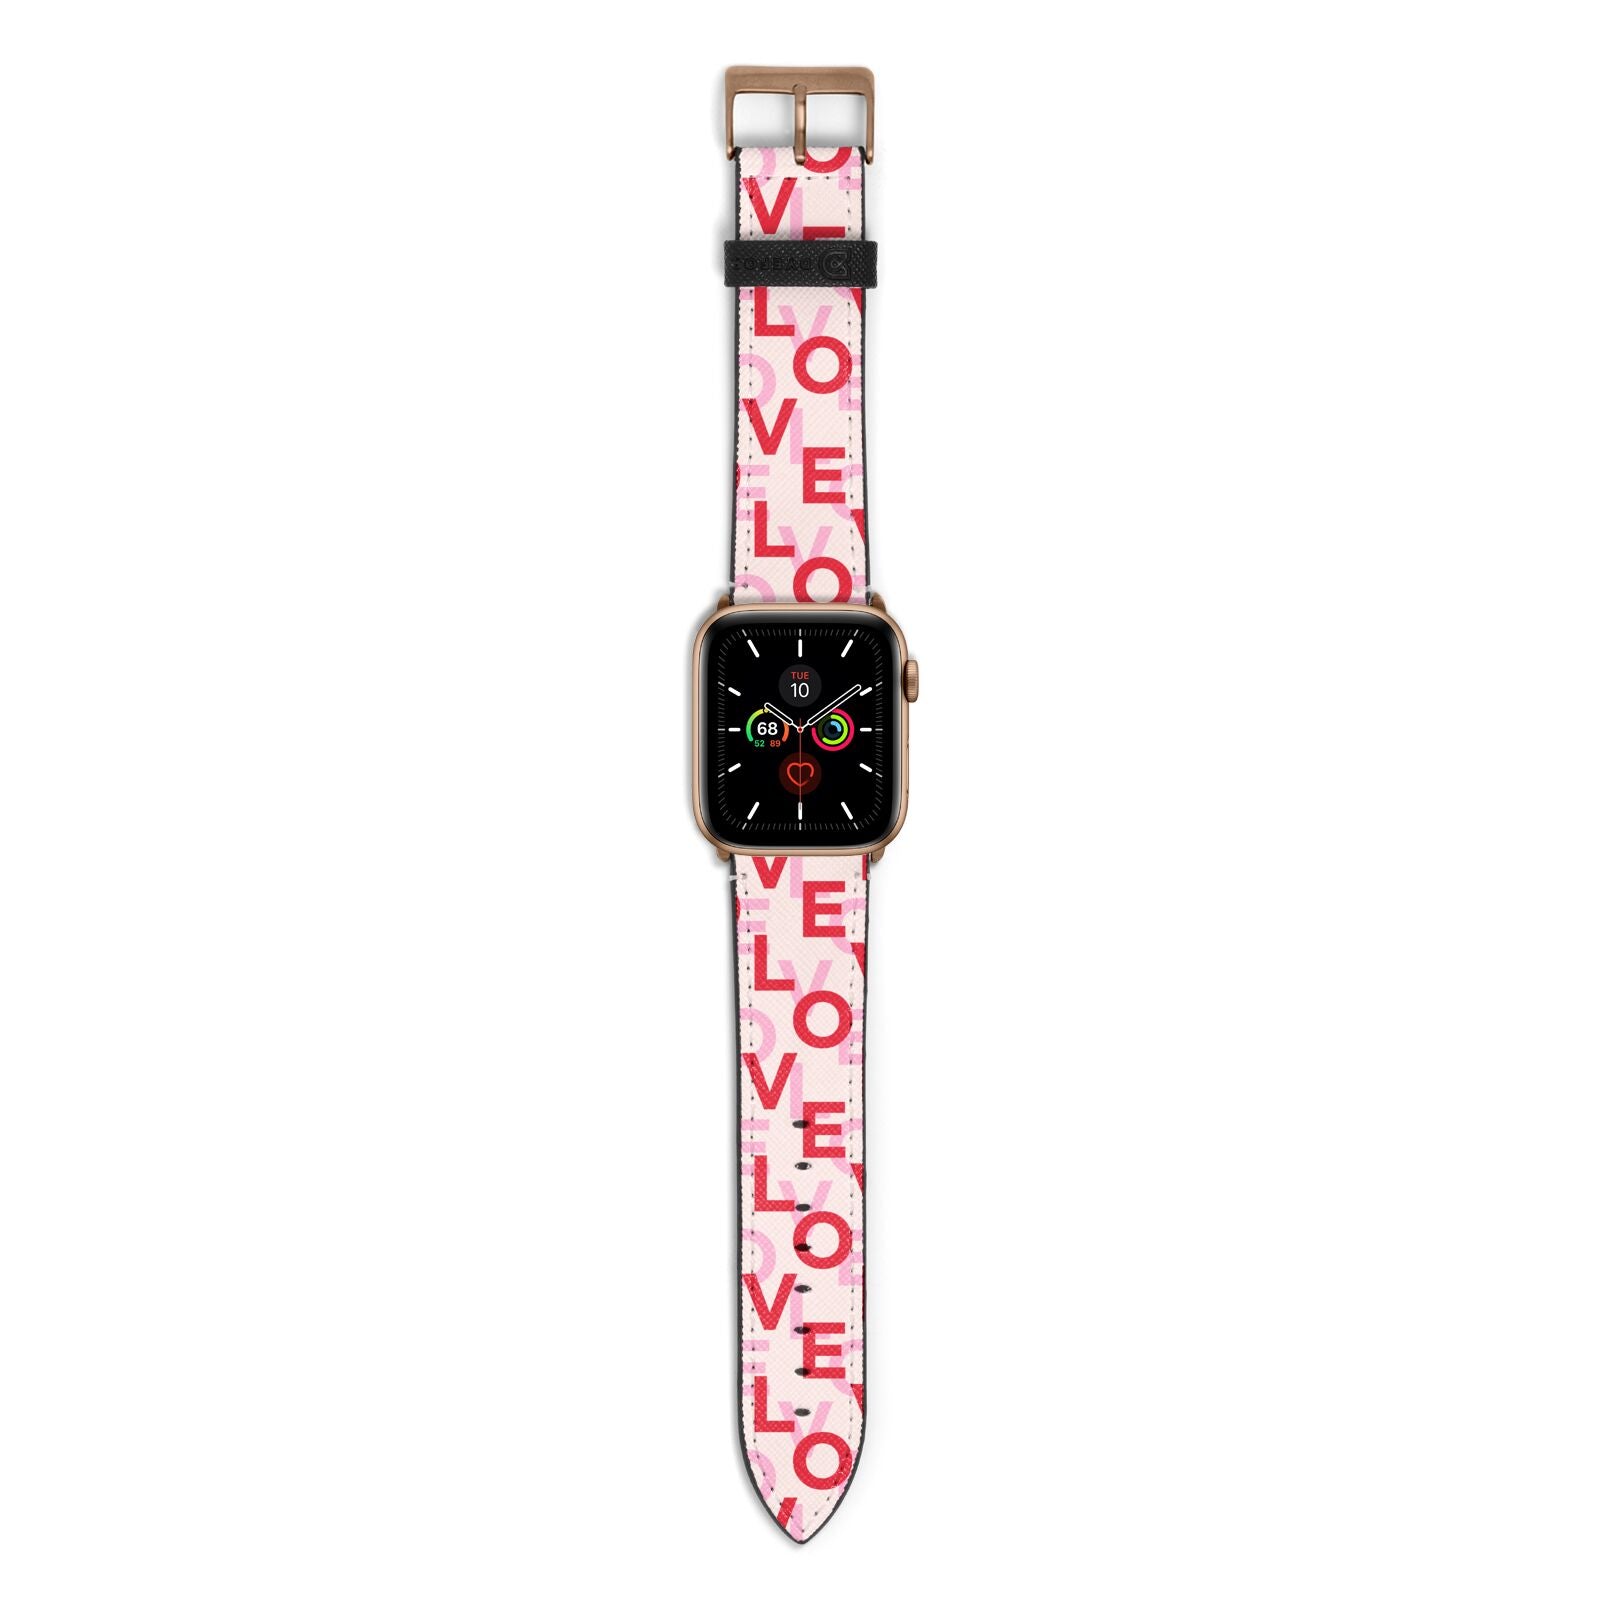 Love Valentine Apple Watch Strap with Gold Hardware